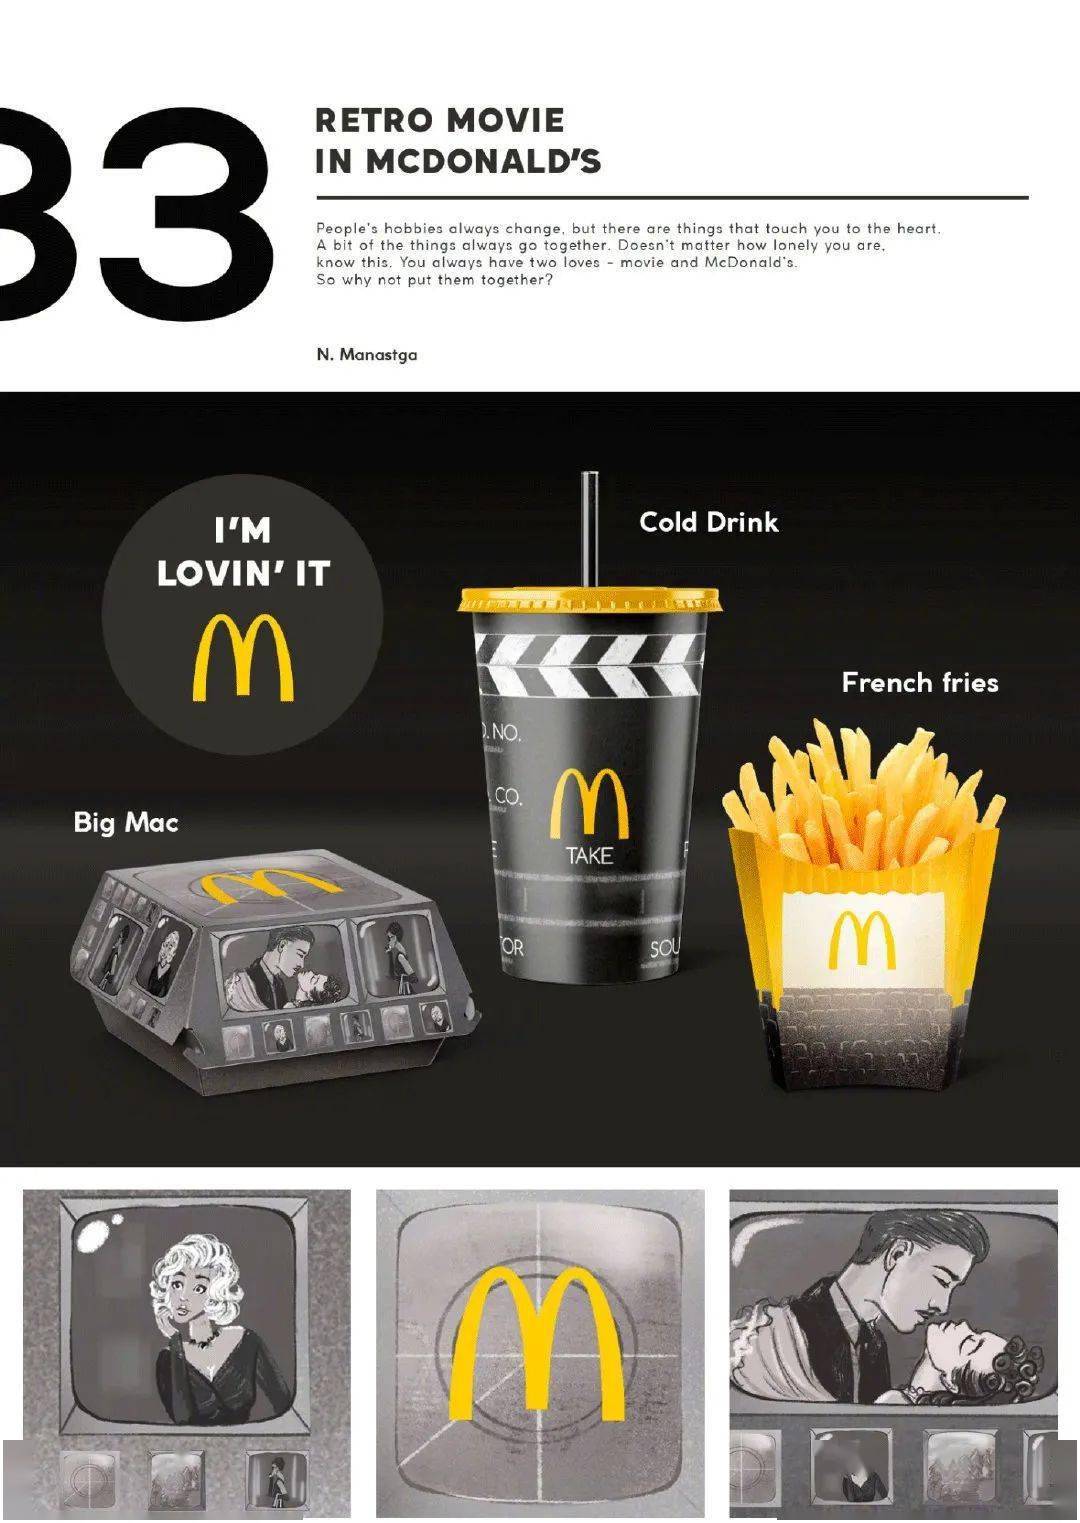 麦当劳设计风格分析图片